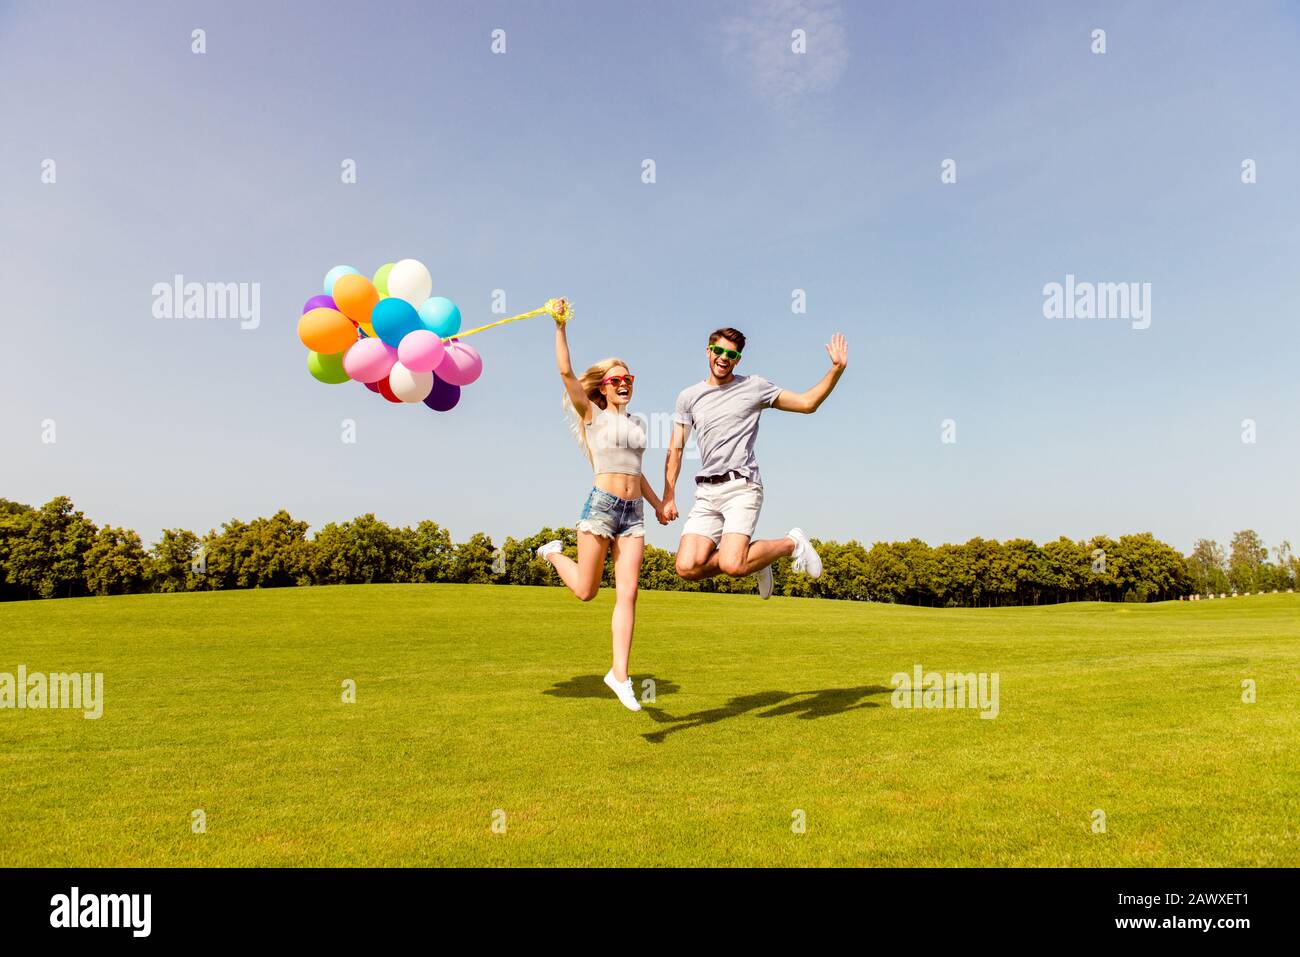 Coppia felice nell'amore che ha divertimento e saltando con i palloncini Foto Stock